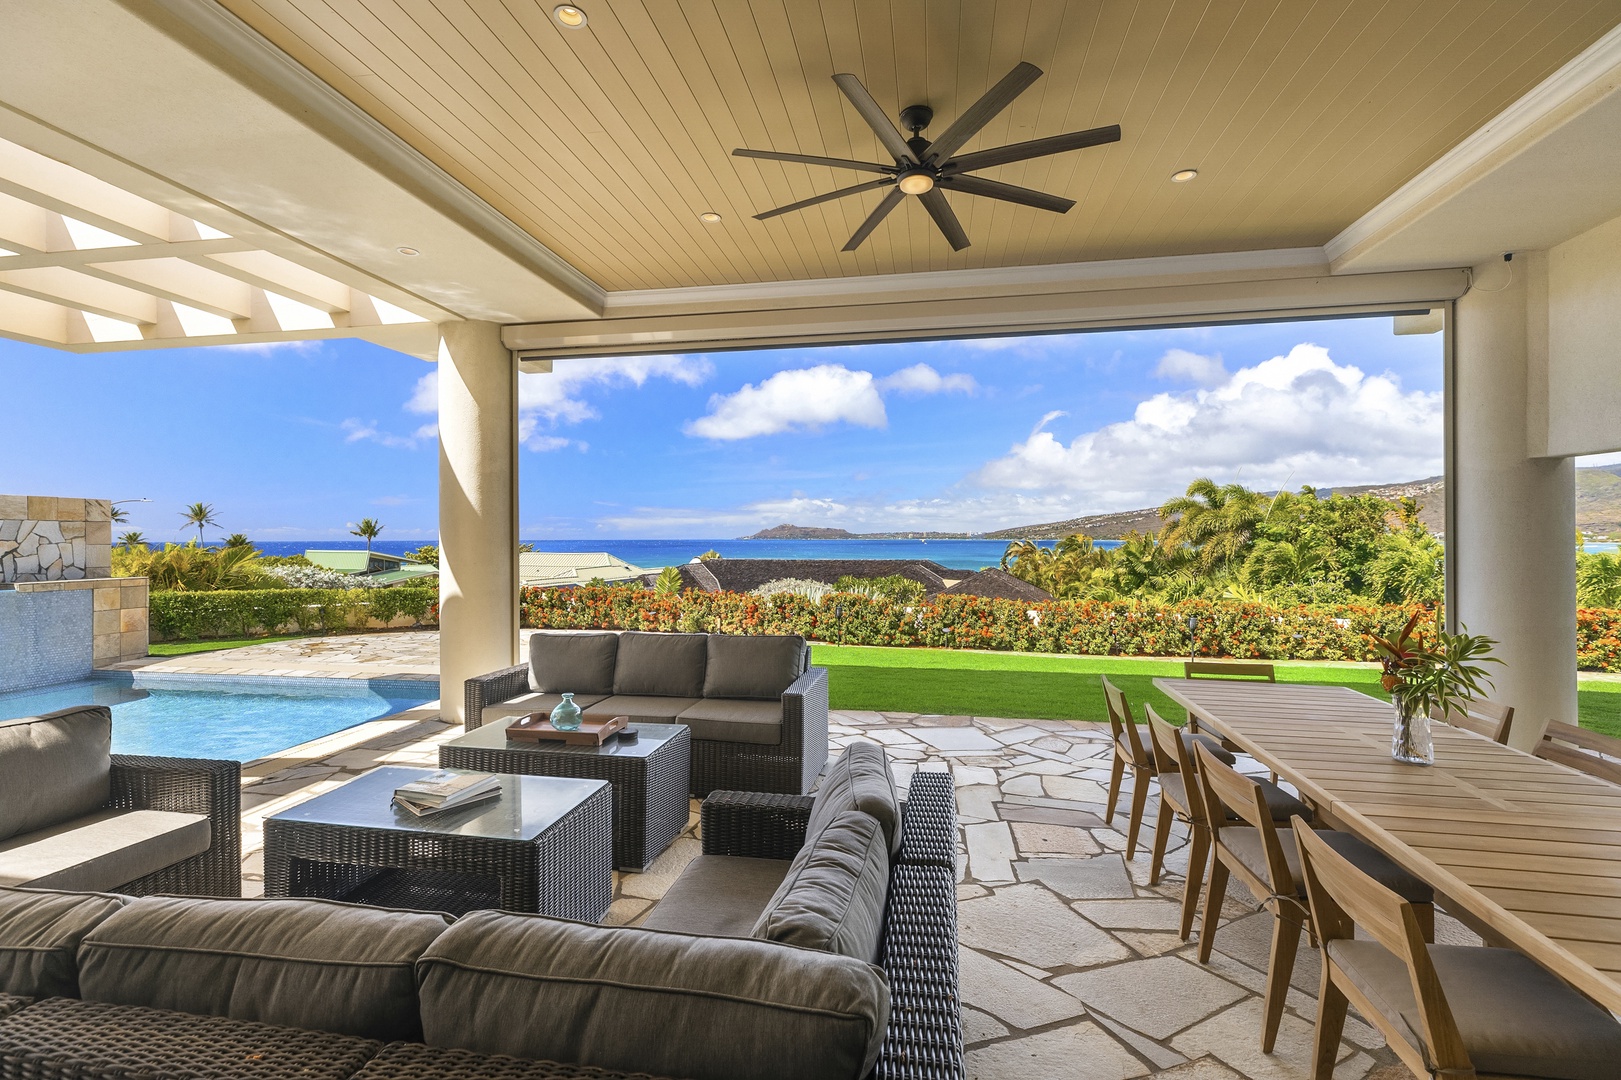 Honolulu Vacation Rentals, Hale Makana - Outdoor living area